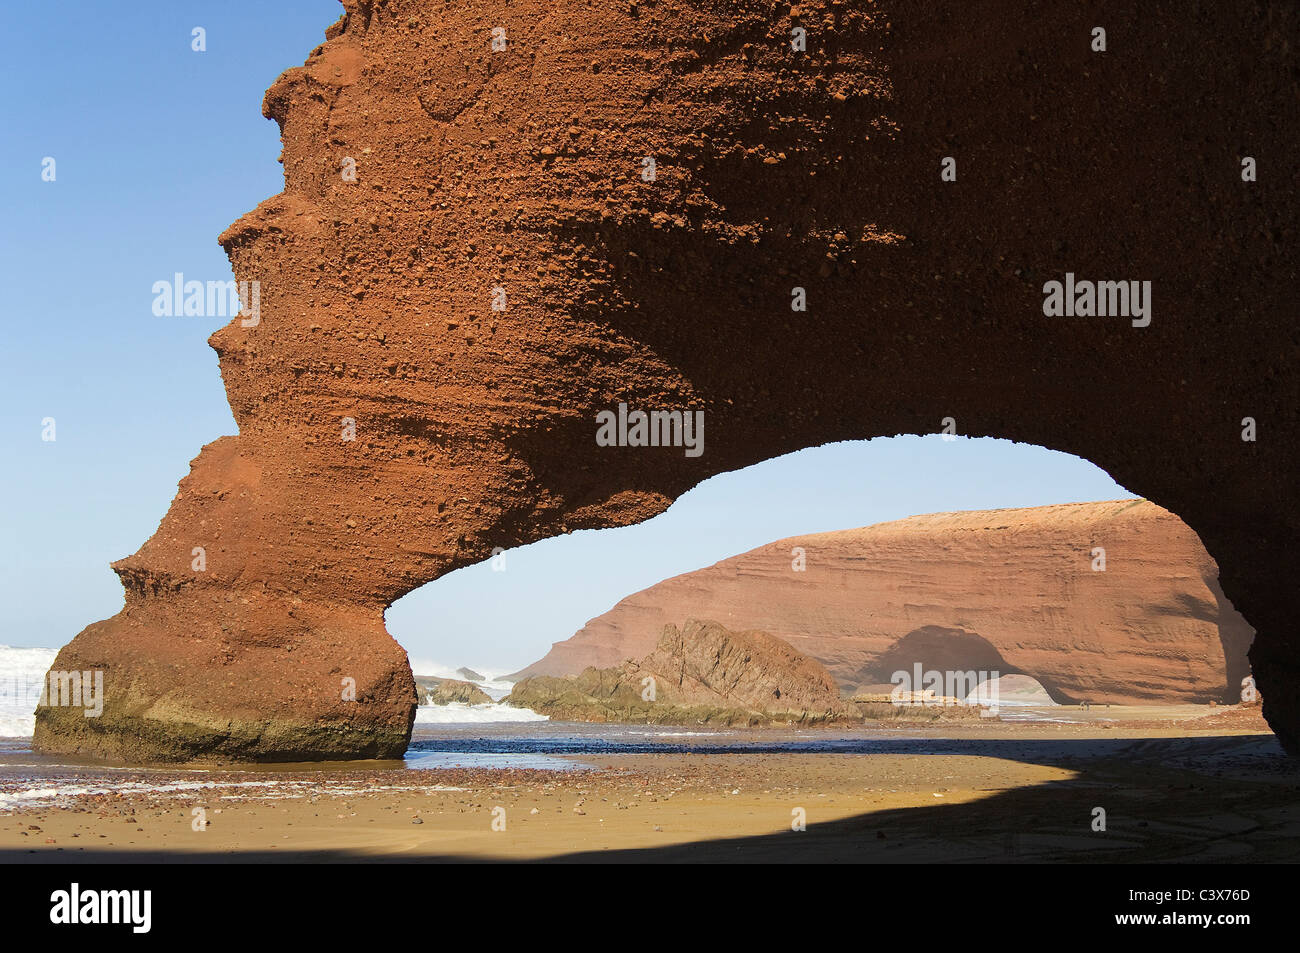 Archi di roccia sulla spiaggia di Legzira sull'Oceano Atlantico, a 11 km a nord della città di Sidi Ifni nel sud-ovest del Marocco. Foto Stock